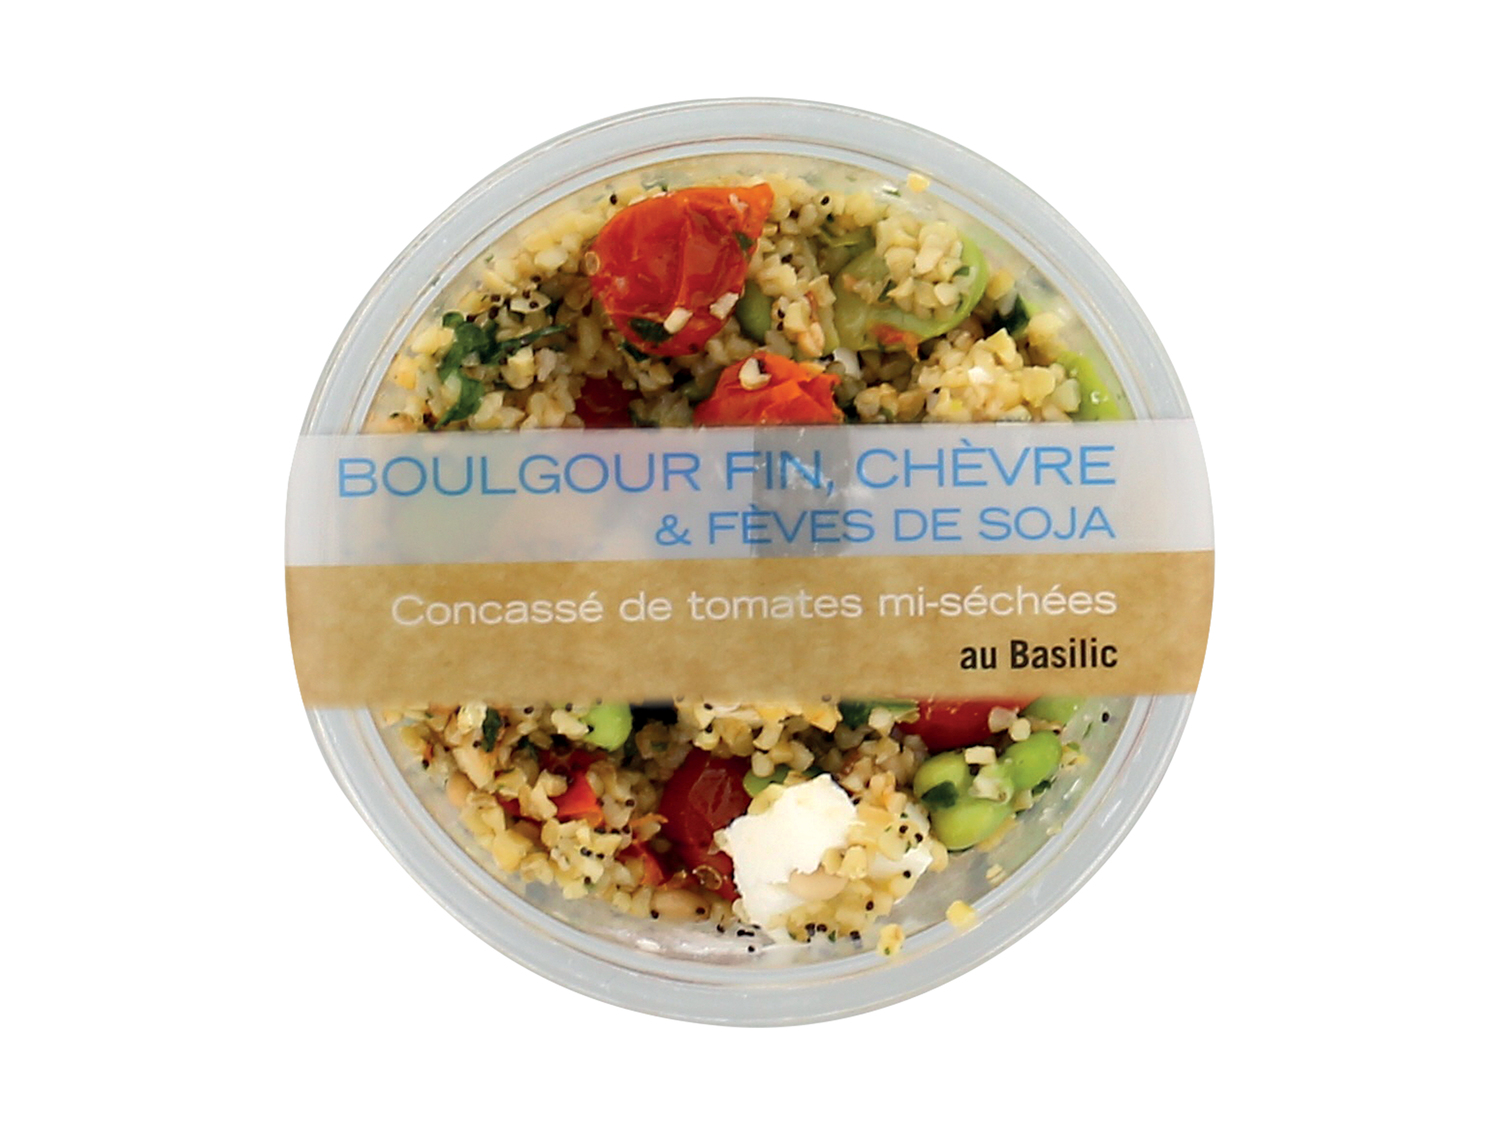 Salade veggie , le prix 2.49 € 
- Au choix : quinoa, boulgour, cranberries, betteraves ...